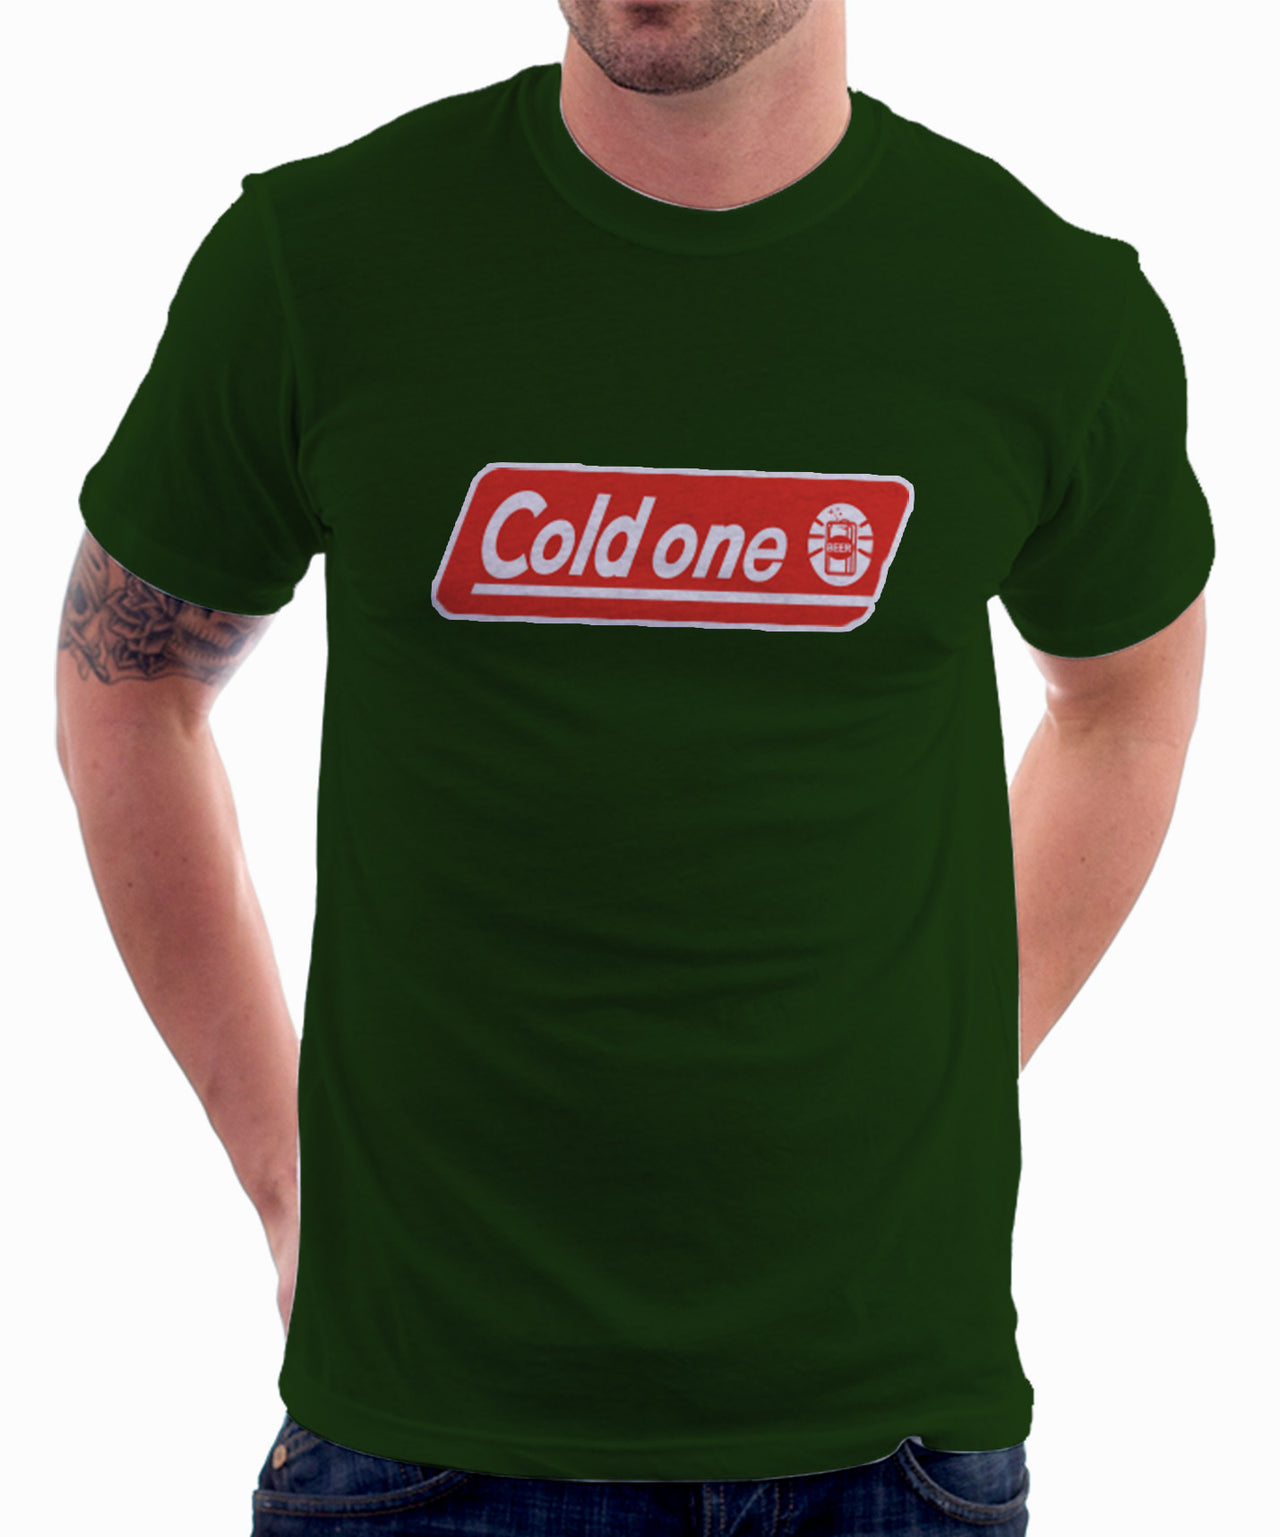 Cold one Dark Green tshirt - TshirtNow.net - 1